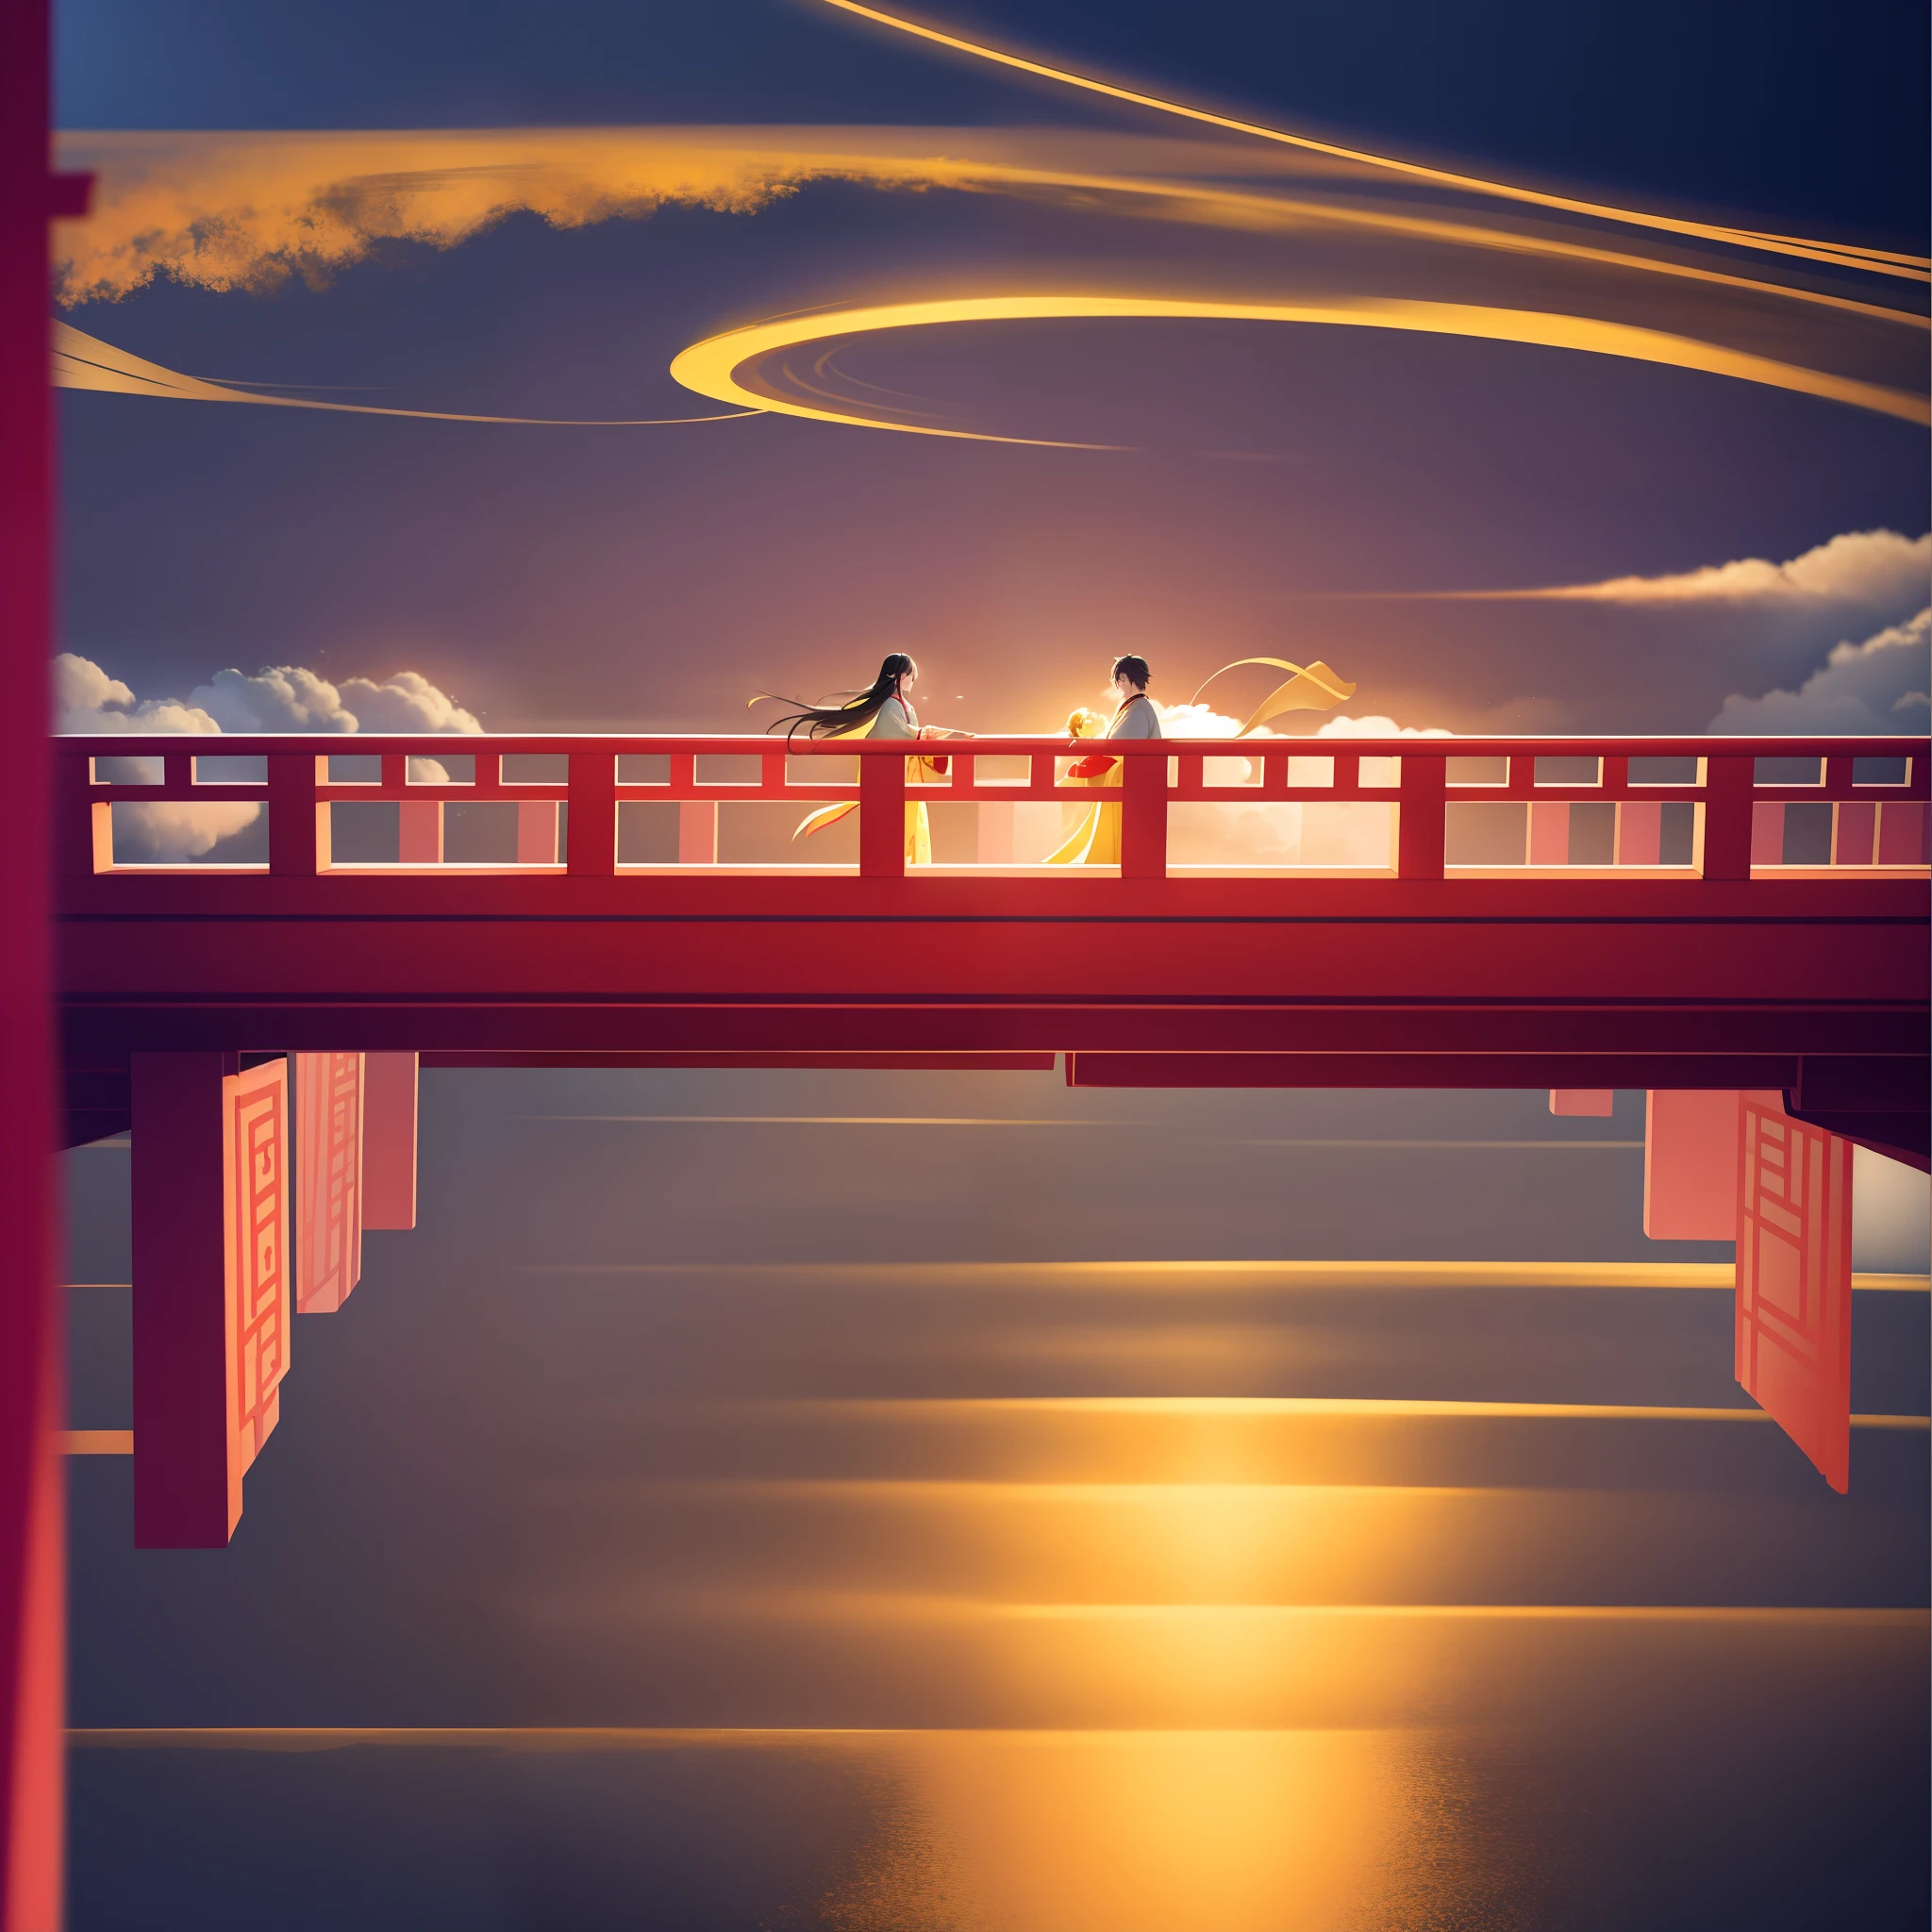 以紅色和黃色為主題，一座木拱橋漂浮在空中，一個男人和一個女人在橋上相遇，穿著中國古代漢服，橋周圍都是祥雲，大金月，4k，中國畫風格，電影燈光，正視圖，強烈的對比，祥雲把橋遮得一點點